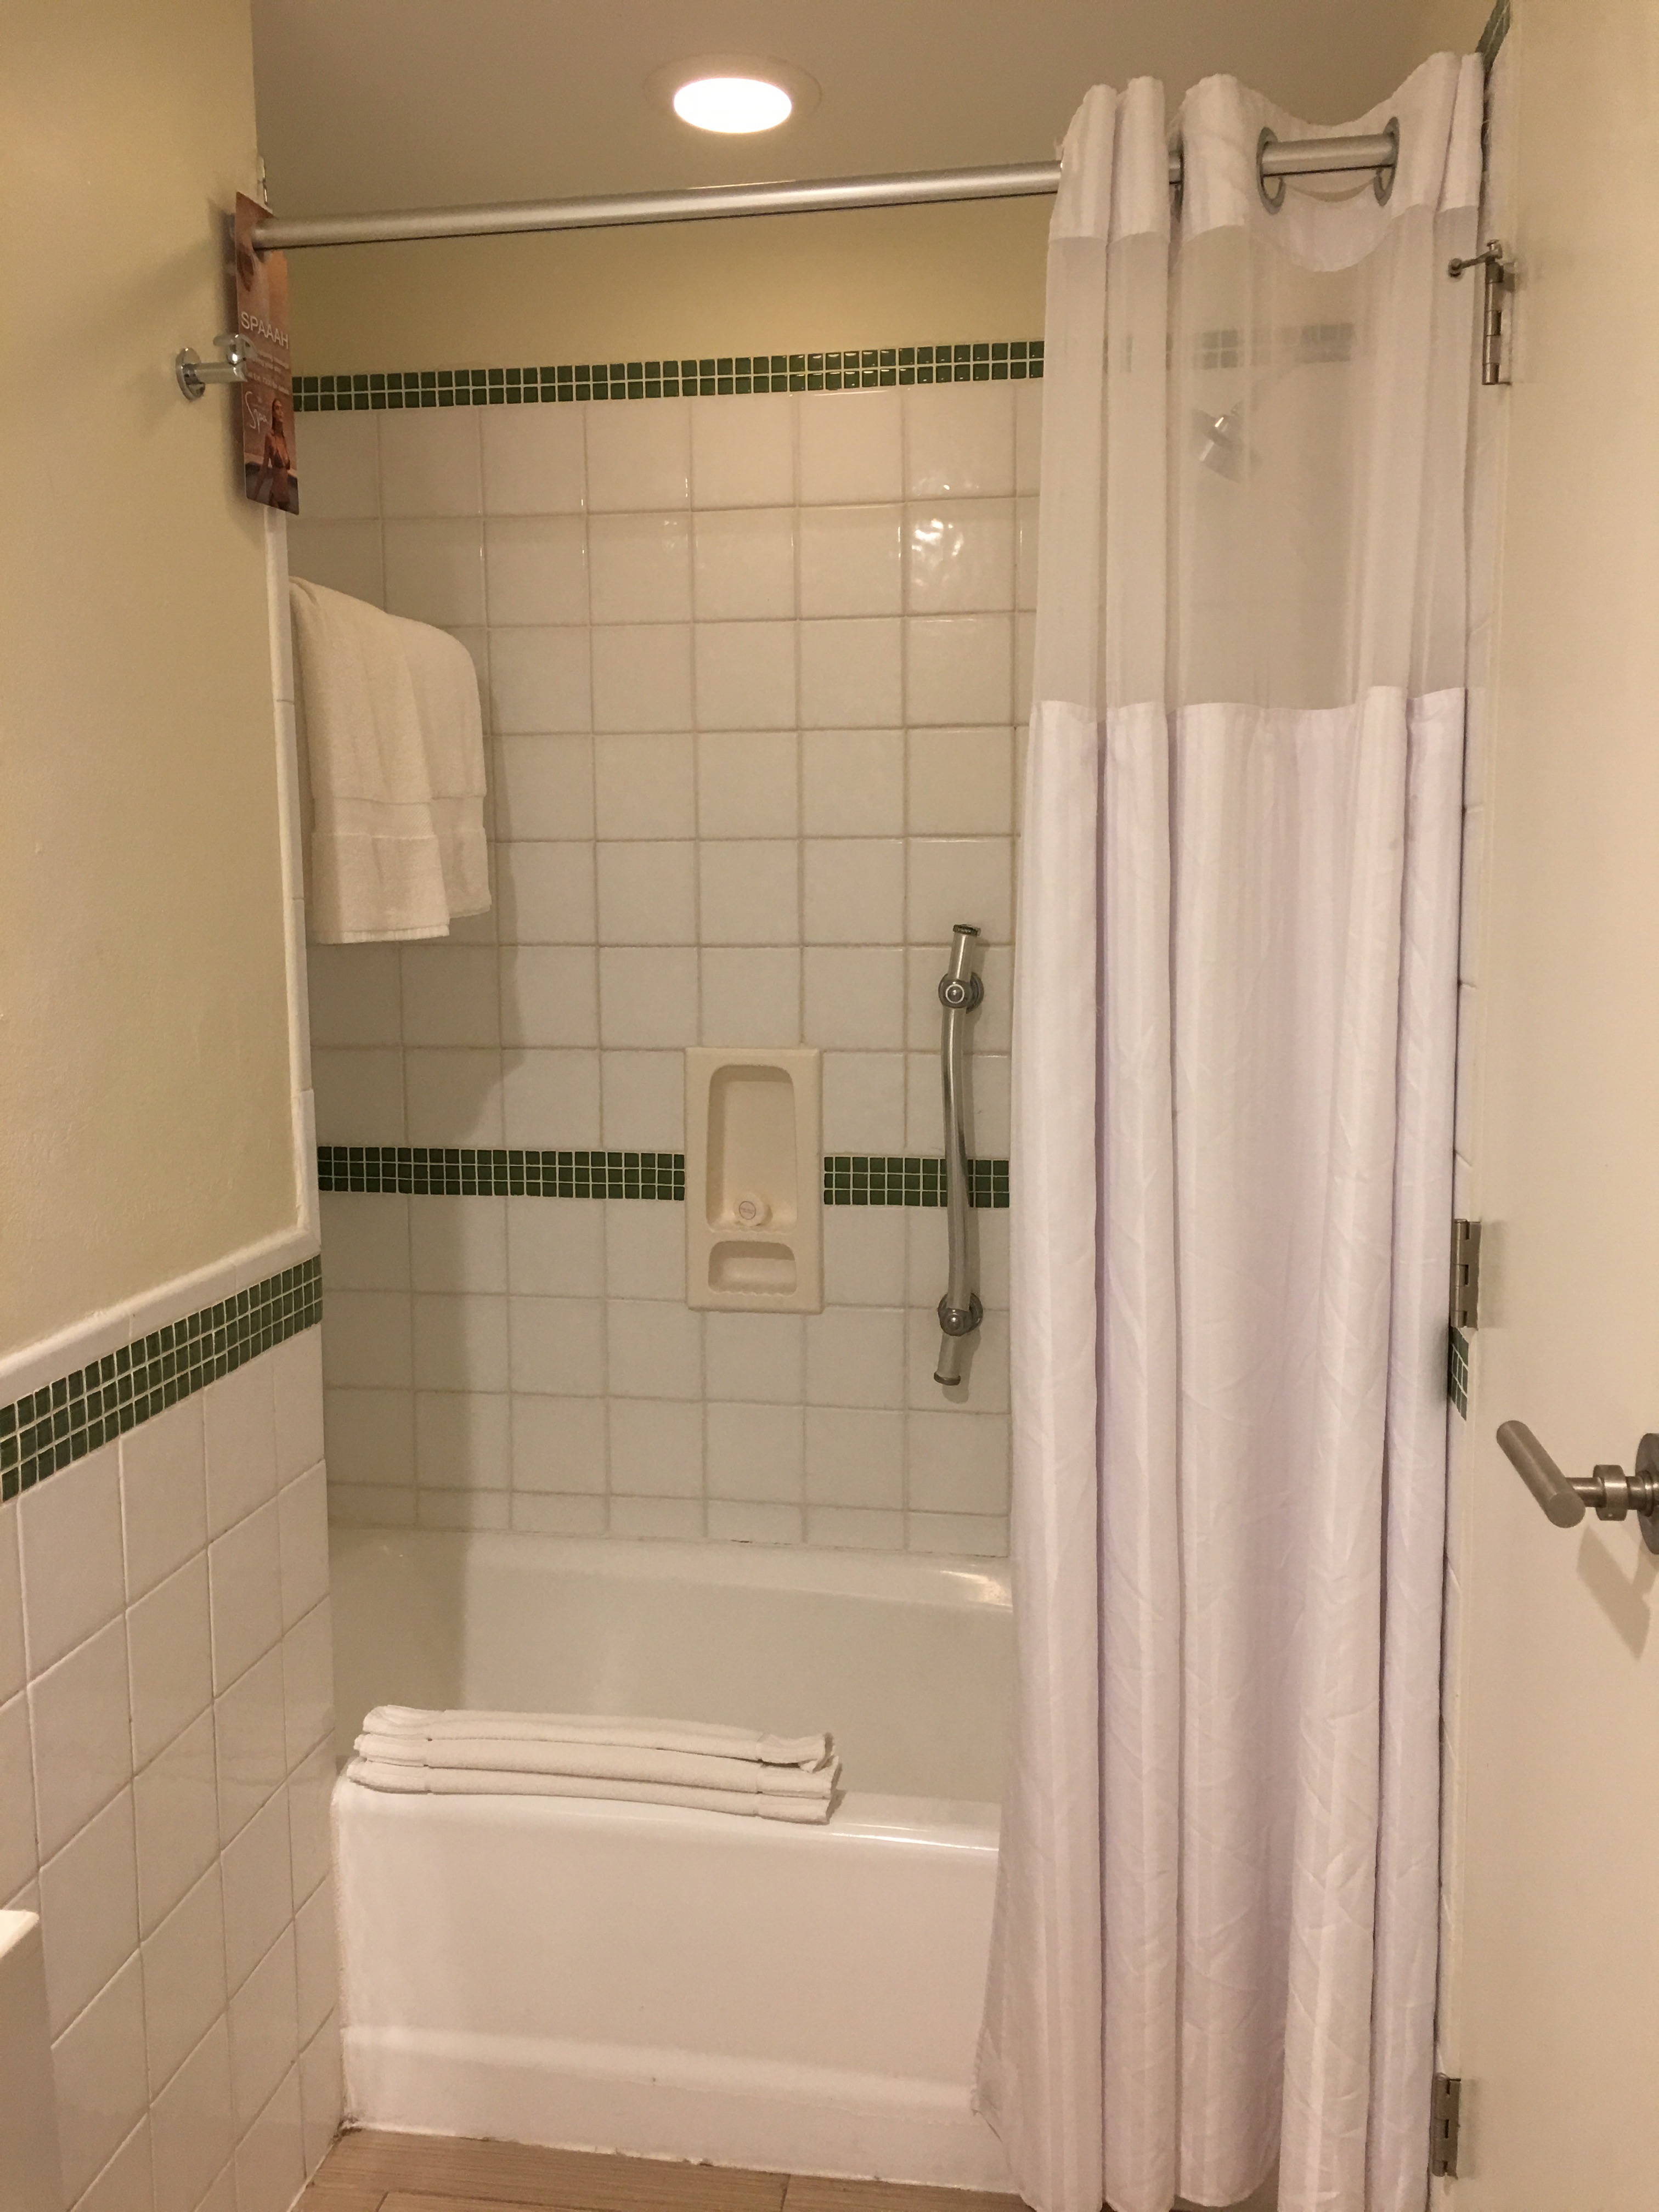 a bathroom with a shower curtain and bathtub